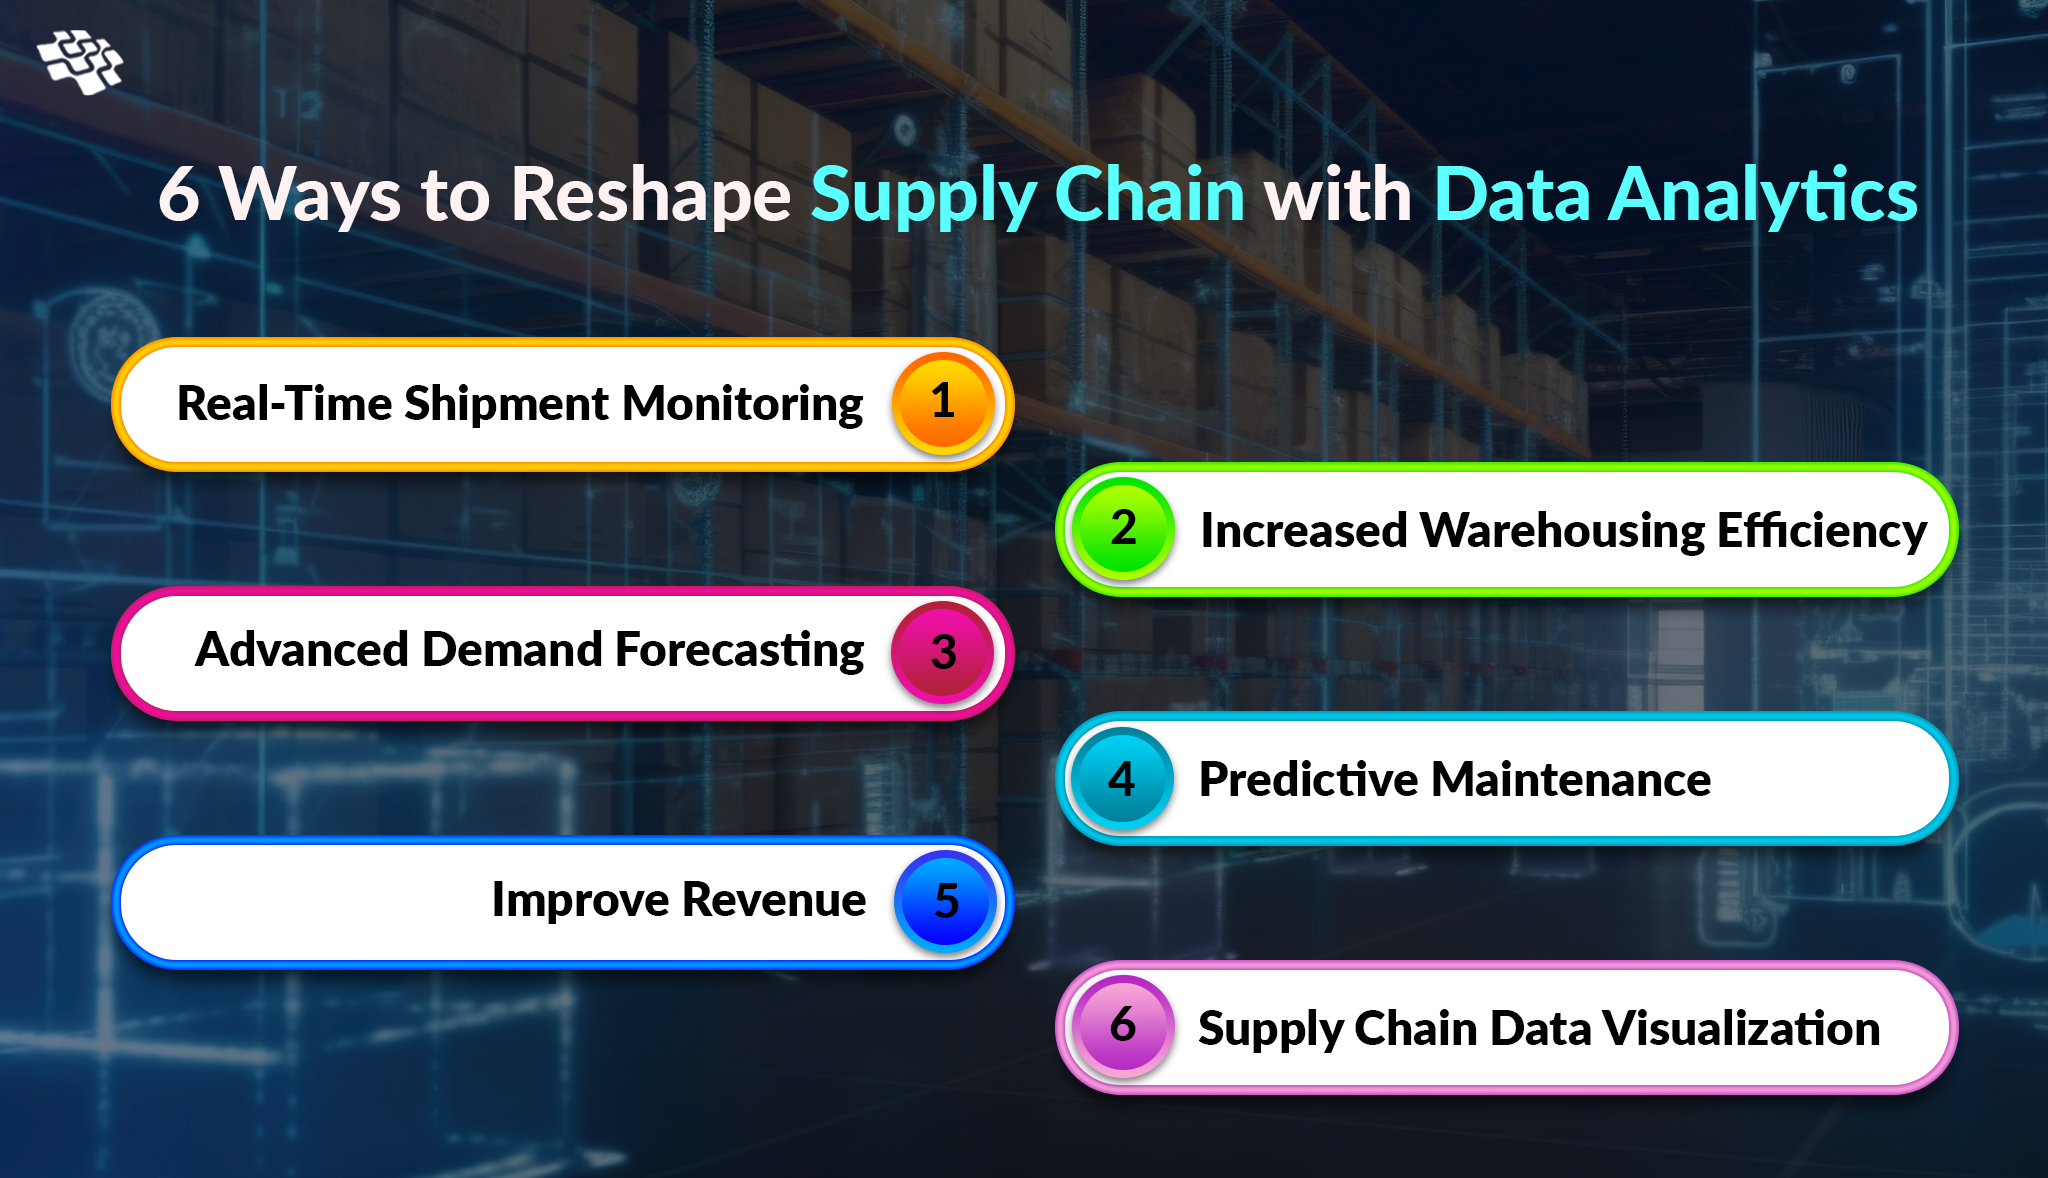 Reshaping Supply Chain with Data Analytics